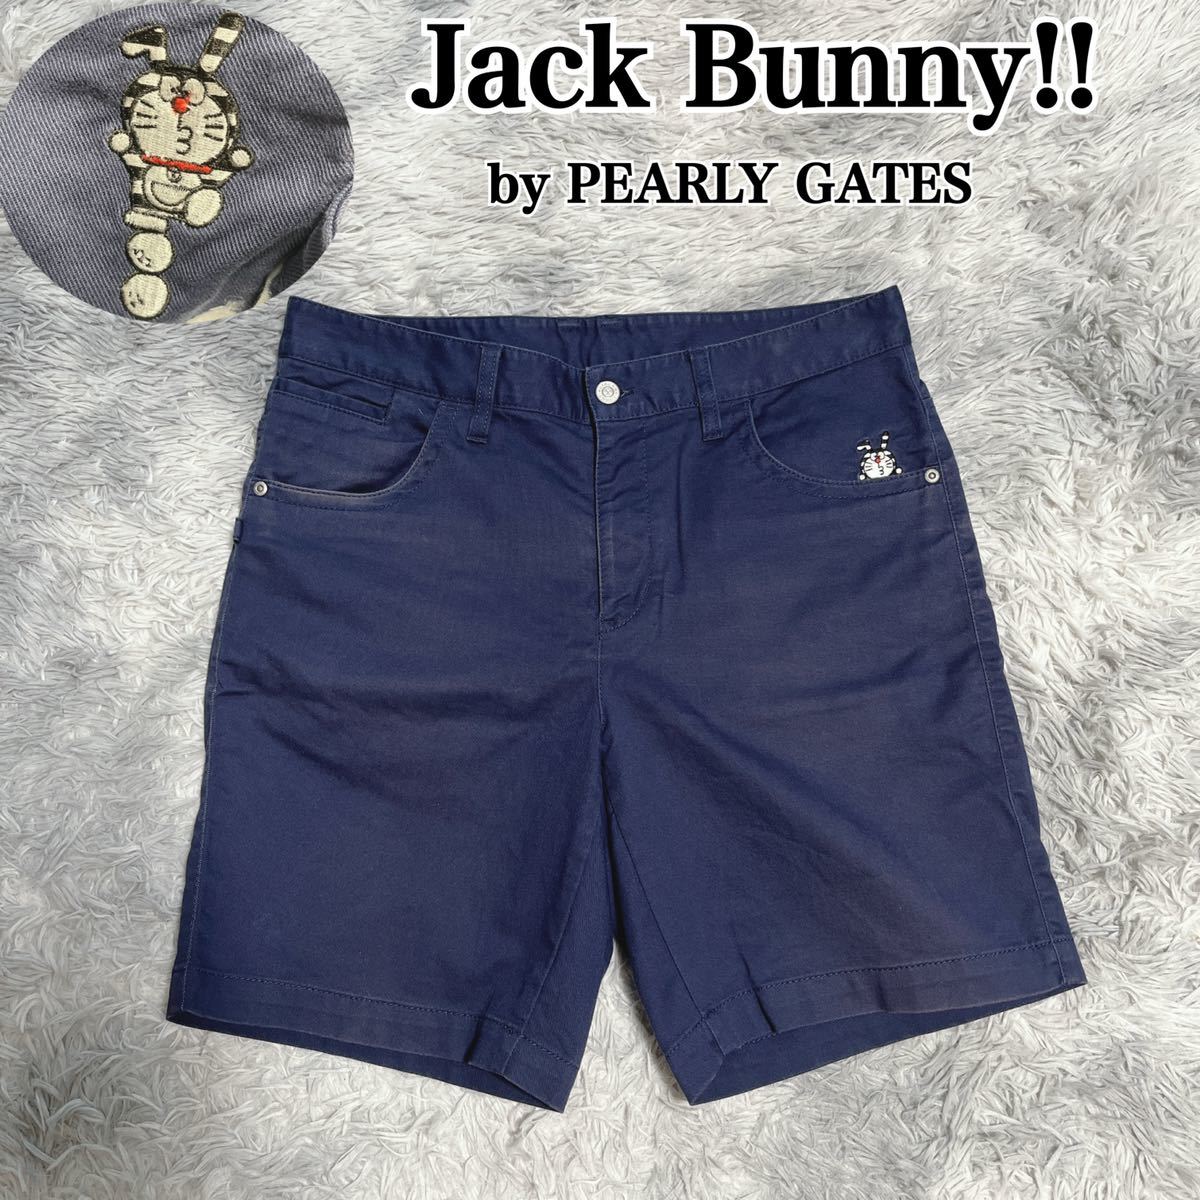 Jack Bunny!! by PEARLY GATES ドラえもん ストレッチ ハーフパンツ ショートパンツ ジャックバニー パーリーゲイツ 5  メンズ ゴルフ